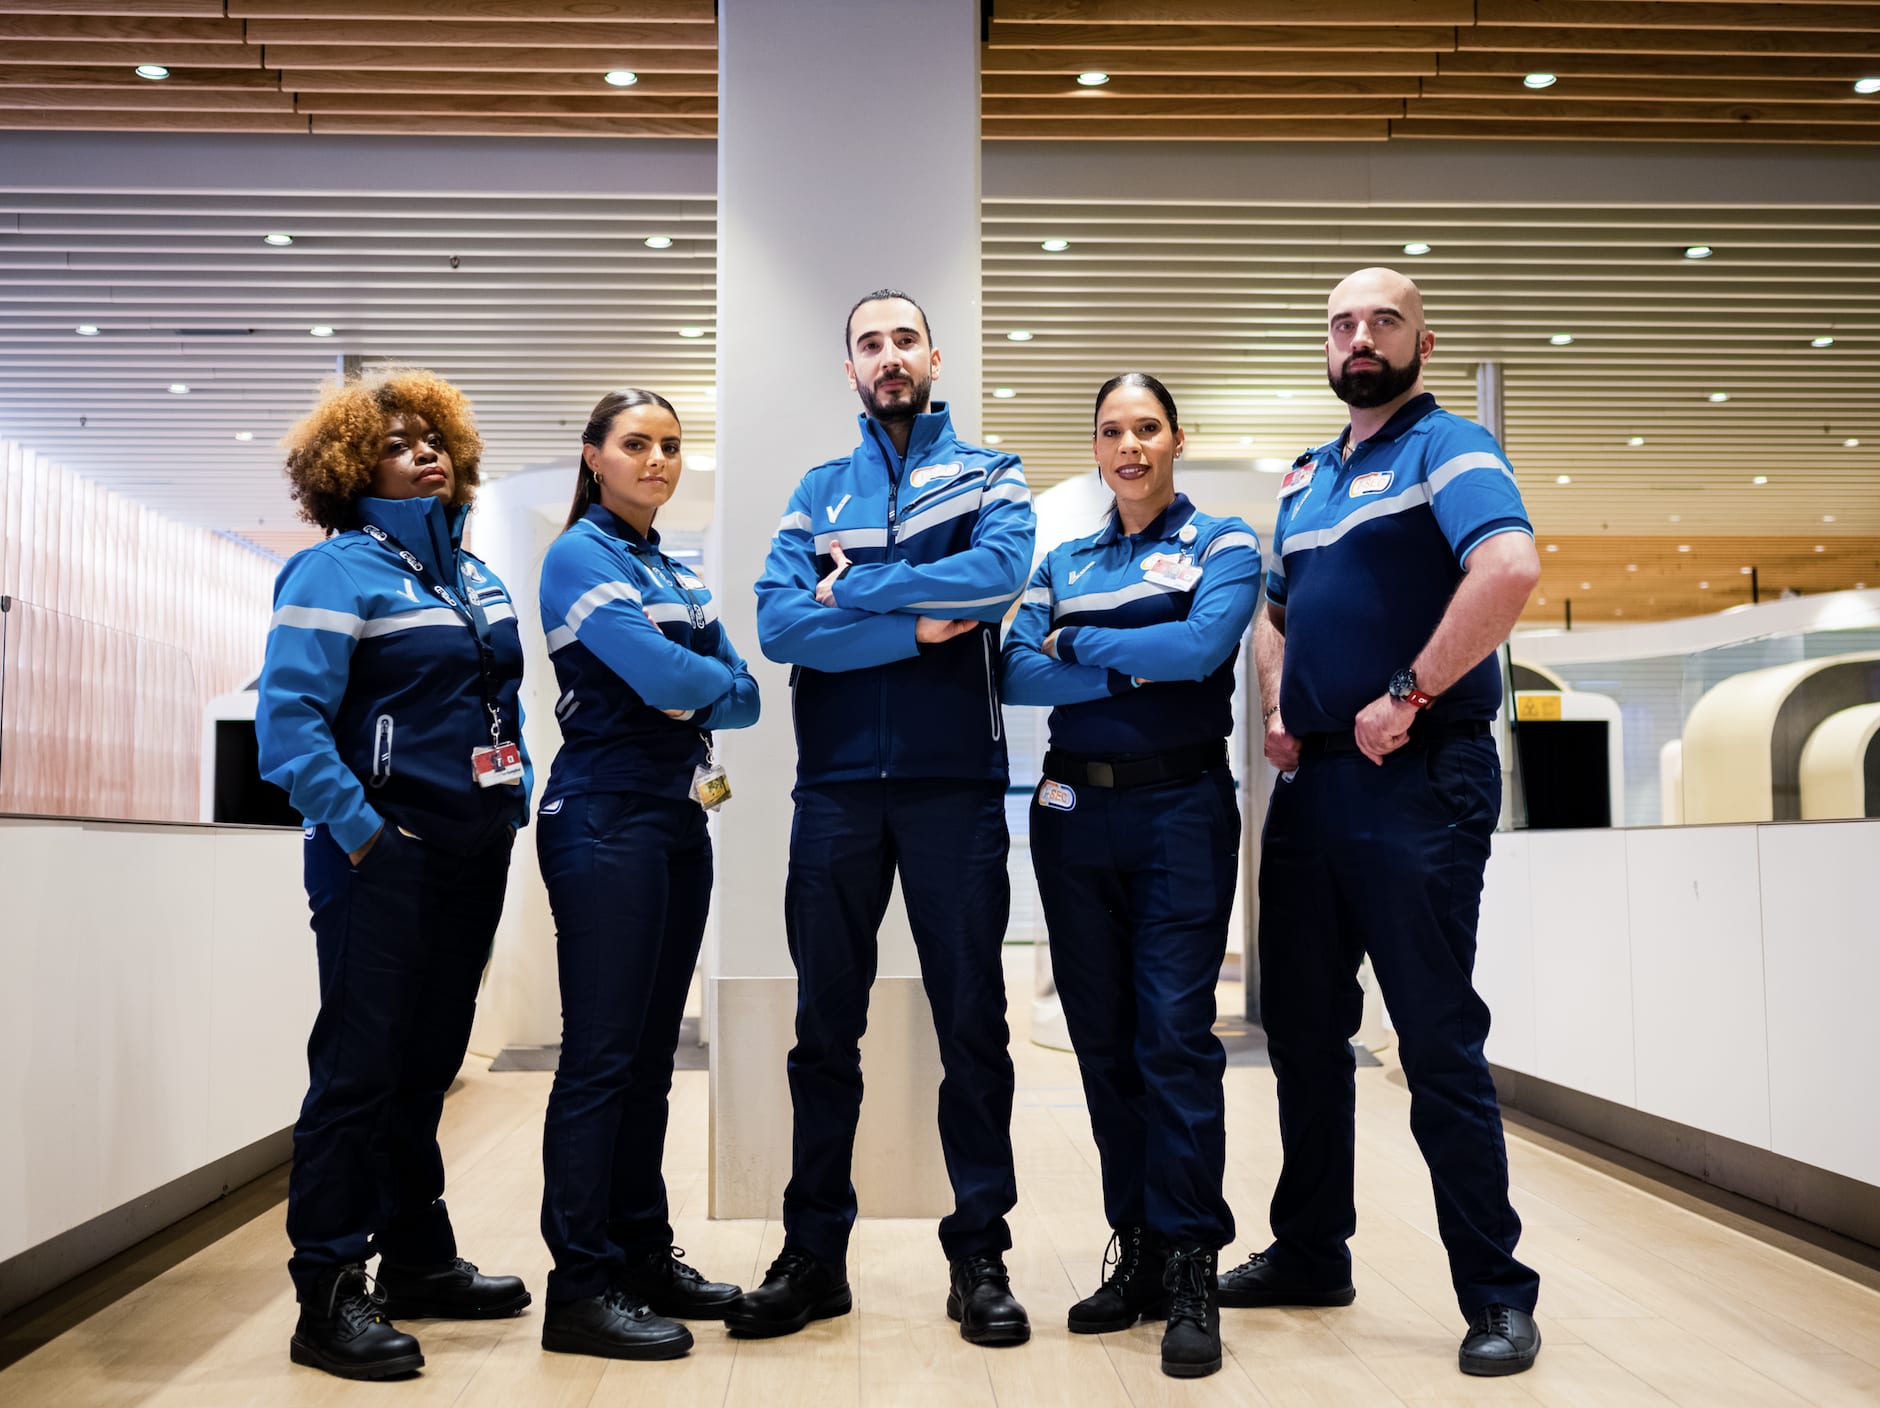 Vijf beveiligingsmedewerkers in uniform staan zelfverzekerd in een groep op Schiphol